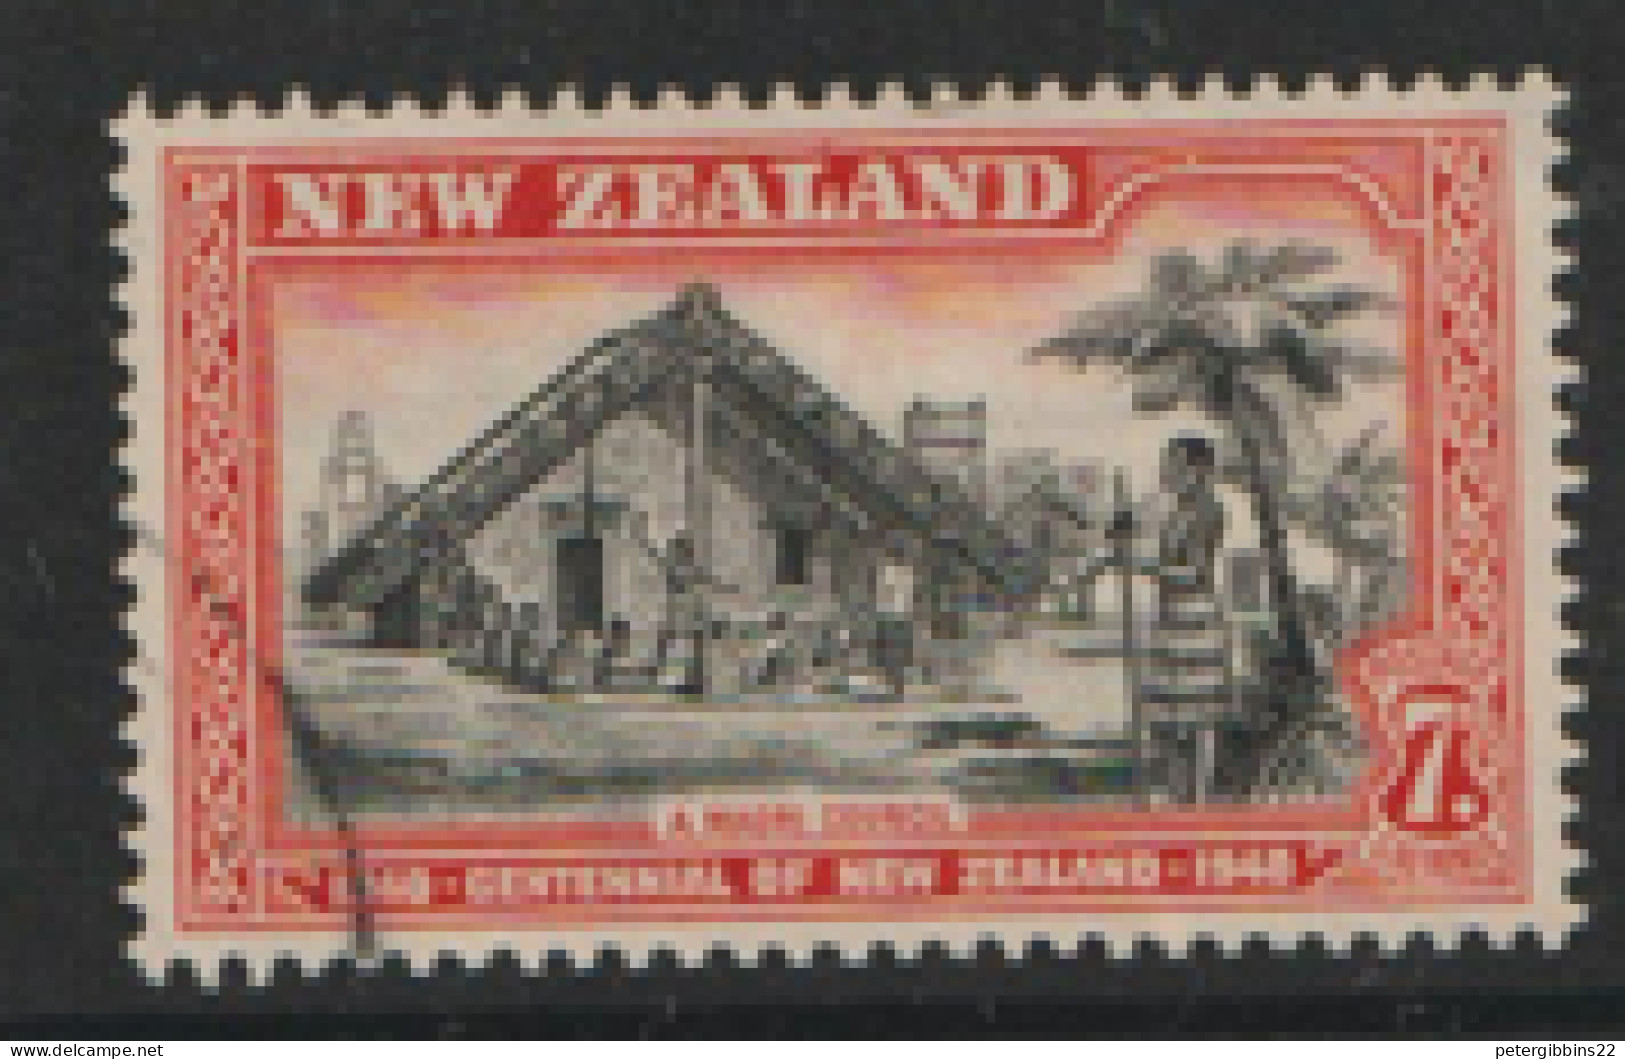 New Zealand   1940     SG 622   7d  Fine Used - Gebruikt